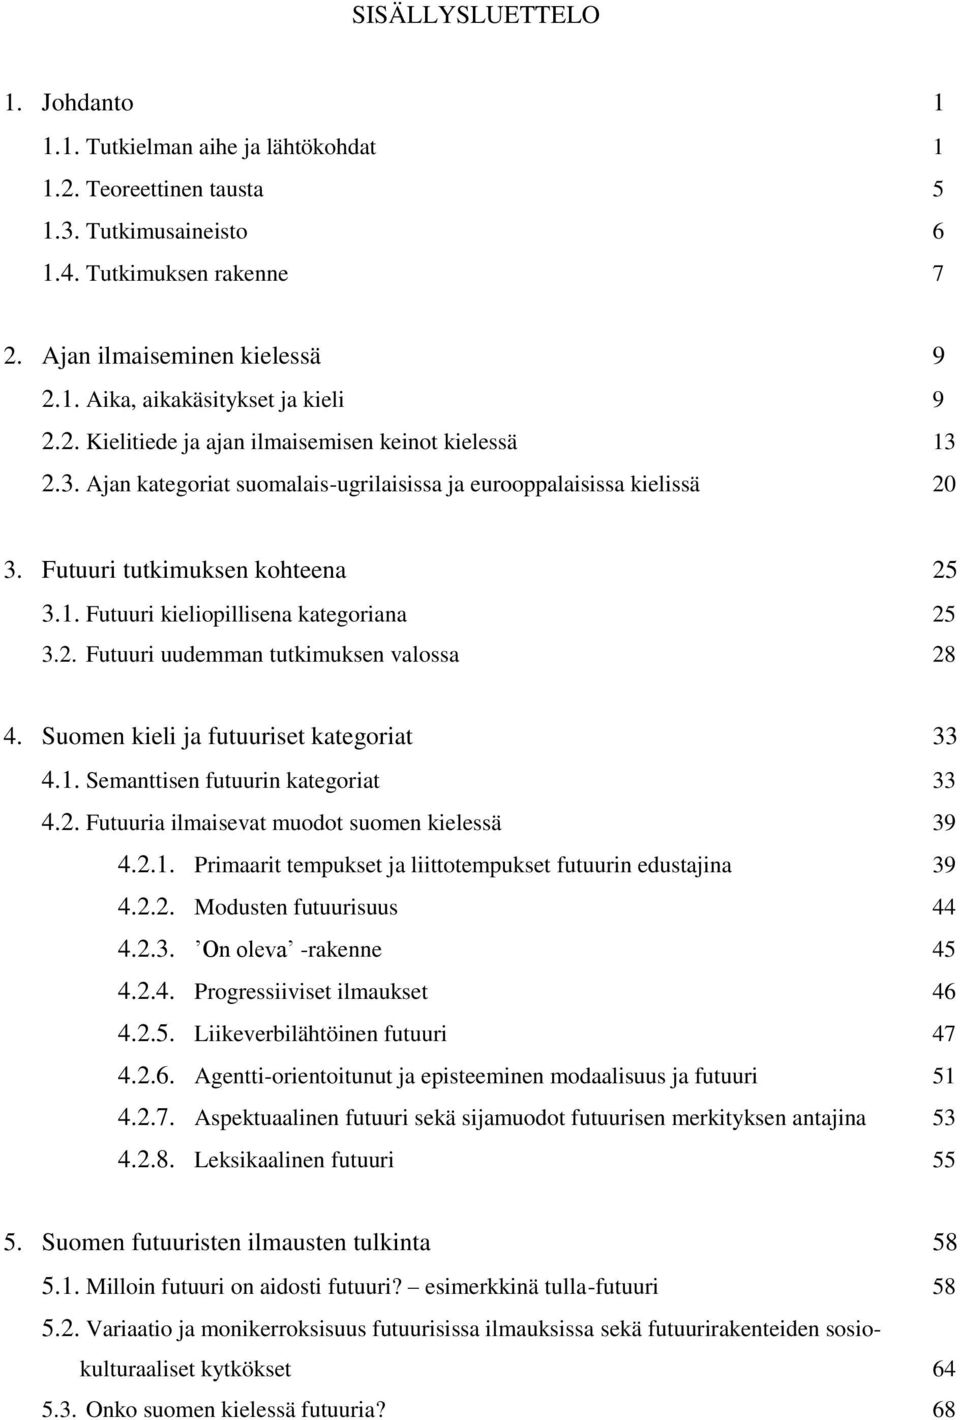 2. Futuuri uudemman tutkimuksen valossa 28 4. Suomen kieli ja futuuriset kategoriat 33 4.1. Semanttisen futuurin kategoriat 33 4.2. Futuuria ilmaisevat muodot suomen kielessä 39 4.2.1. Primaarit tempukset ja liittotempukset futuurin edustajina 39 4.